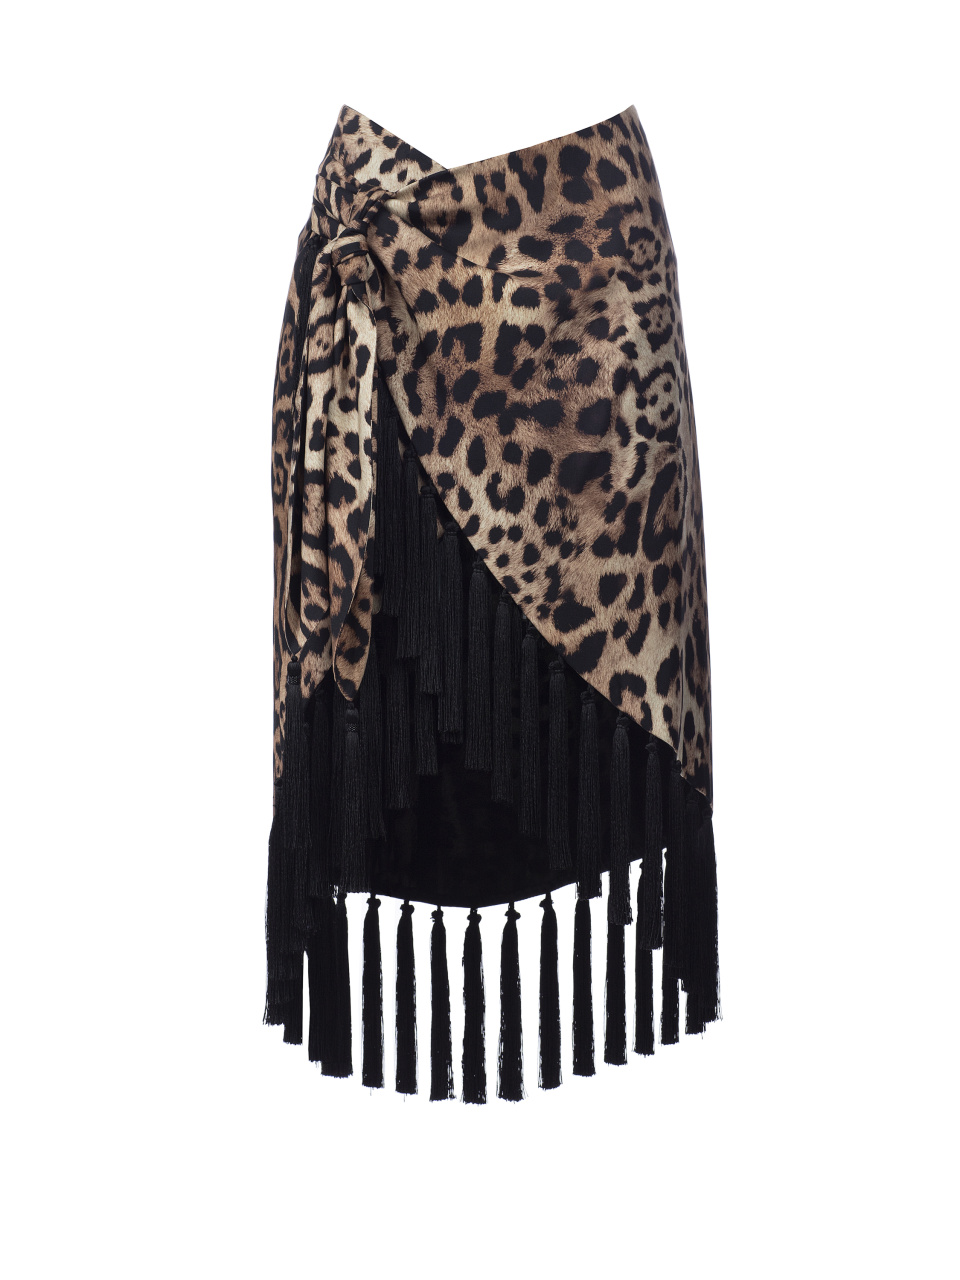 Шелковая юбка с леопардовым принтом и бахромой, 1